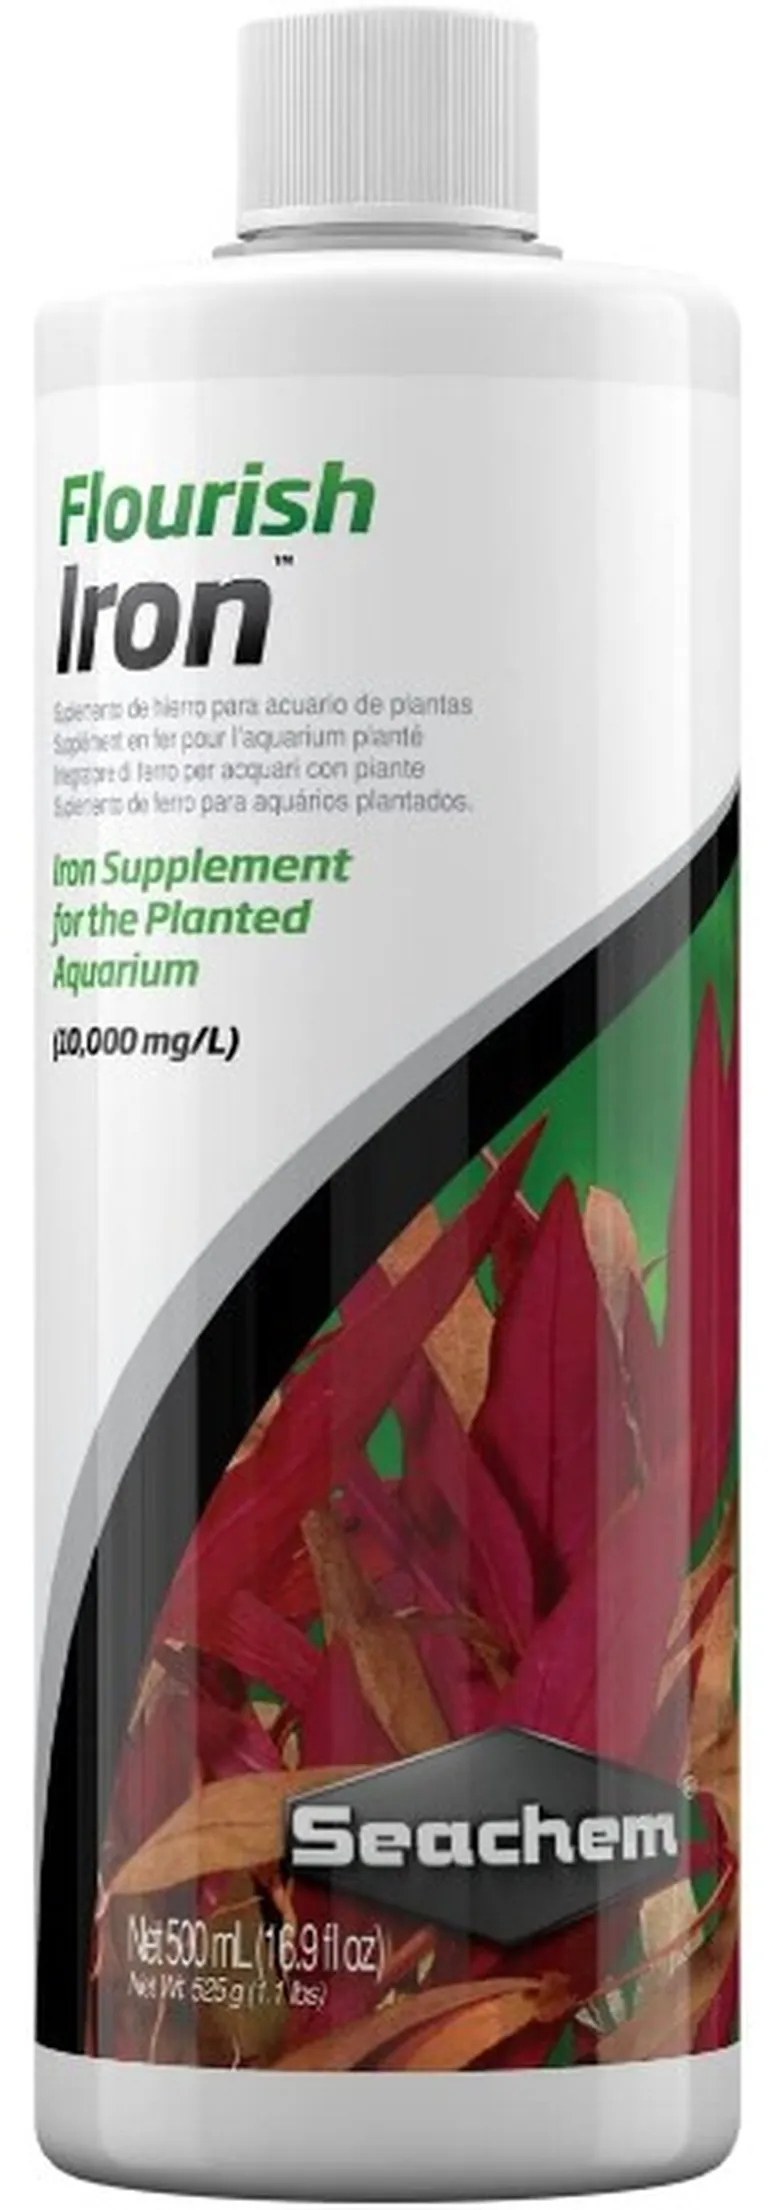 Seachem Flourish Iron Supplement for the Planted Aquarium Photo 2